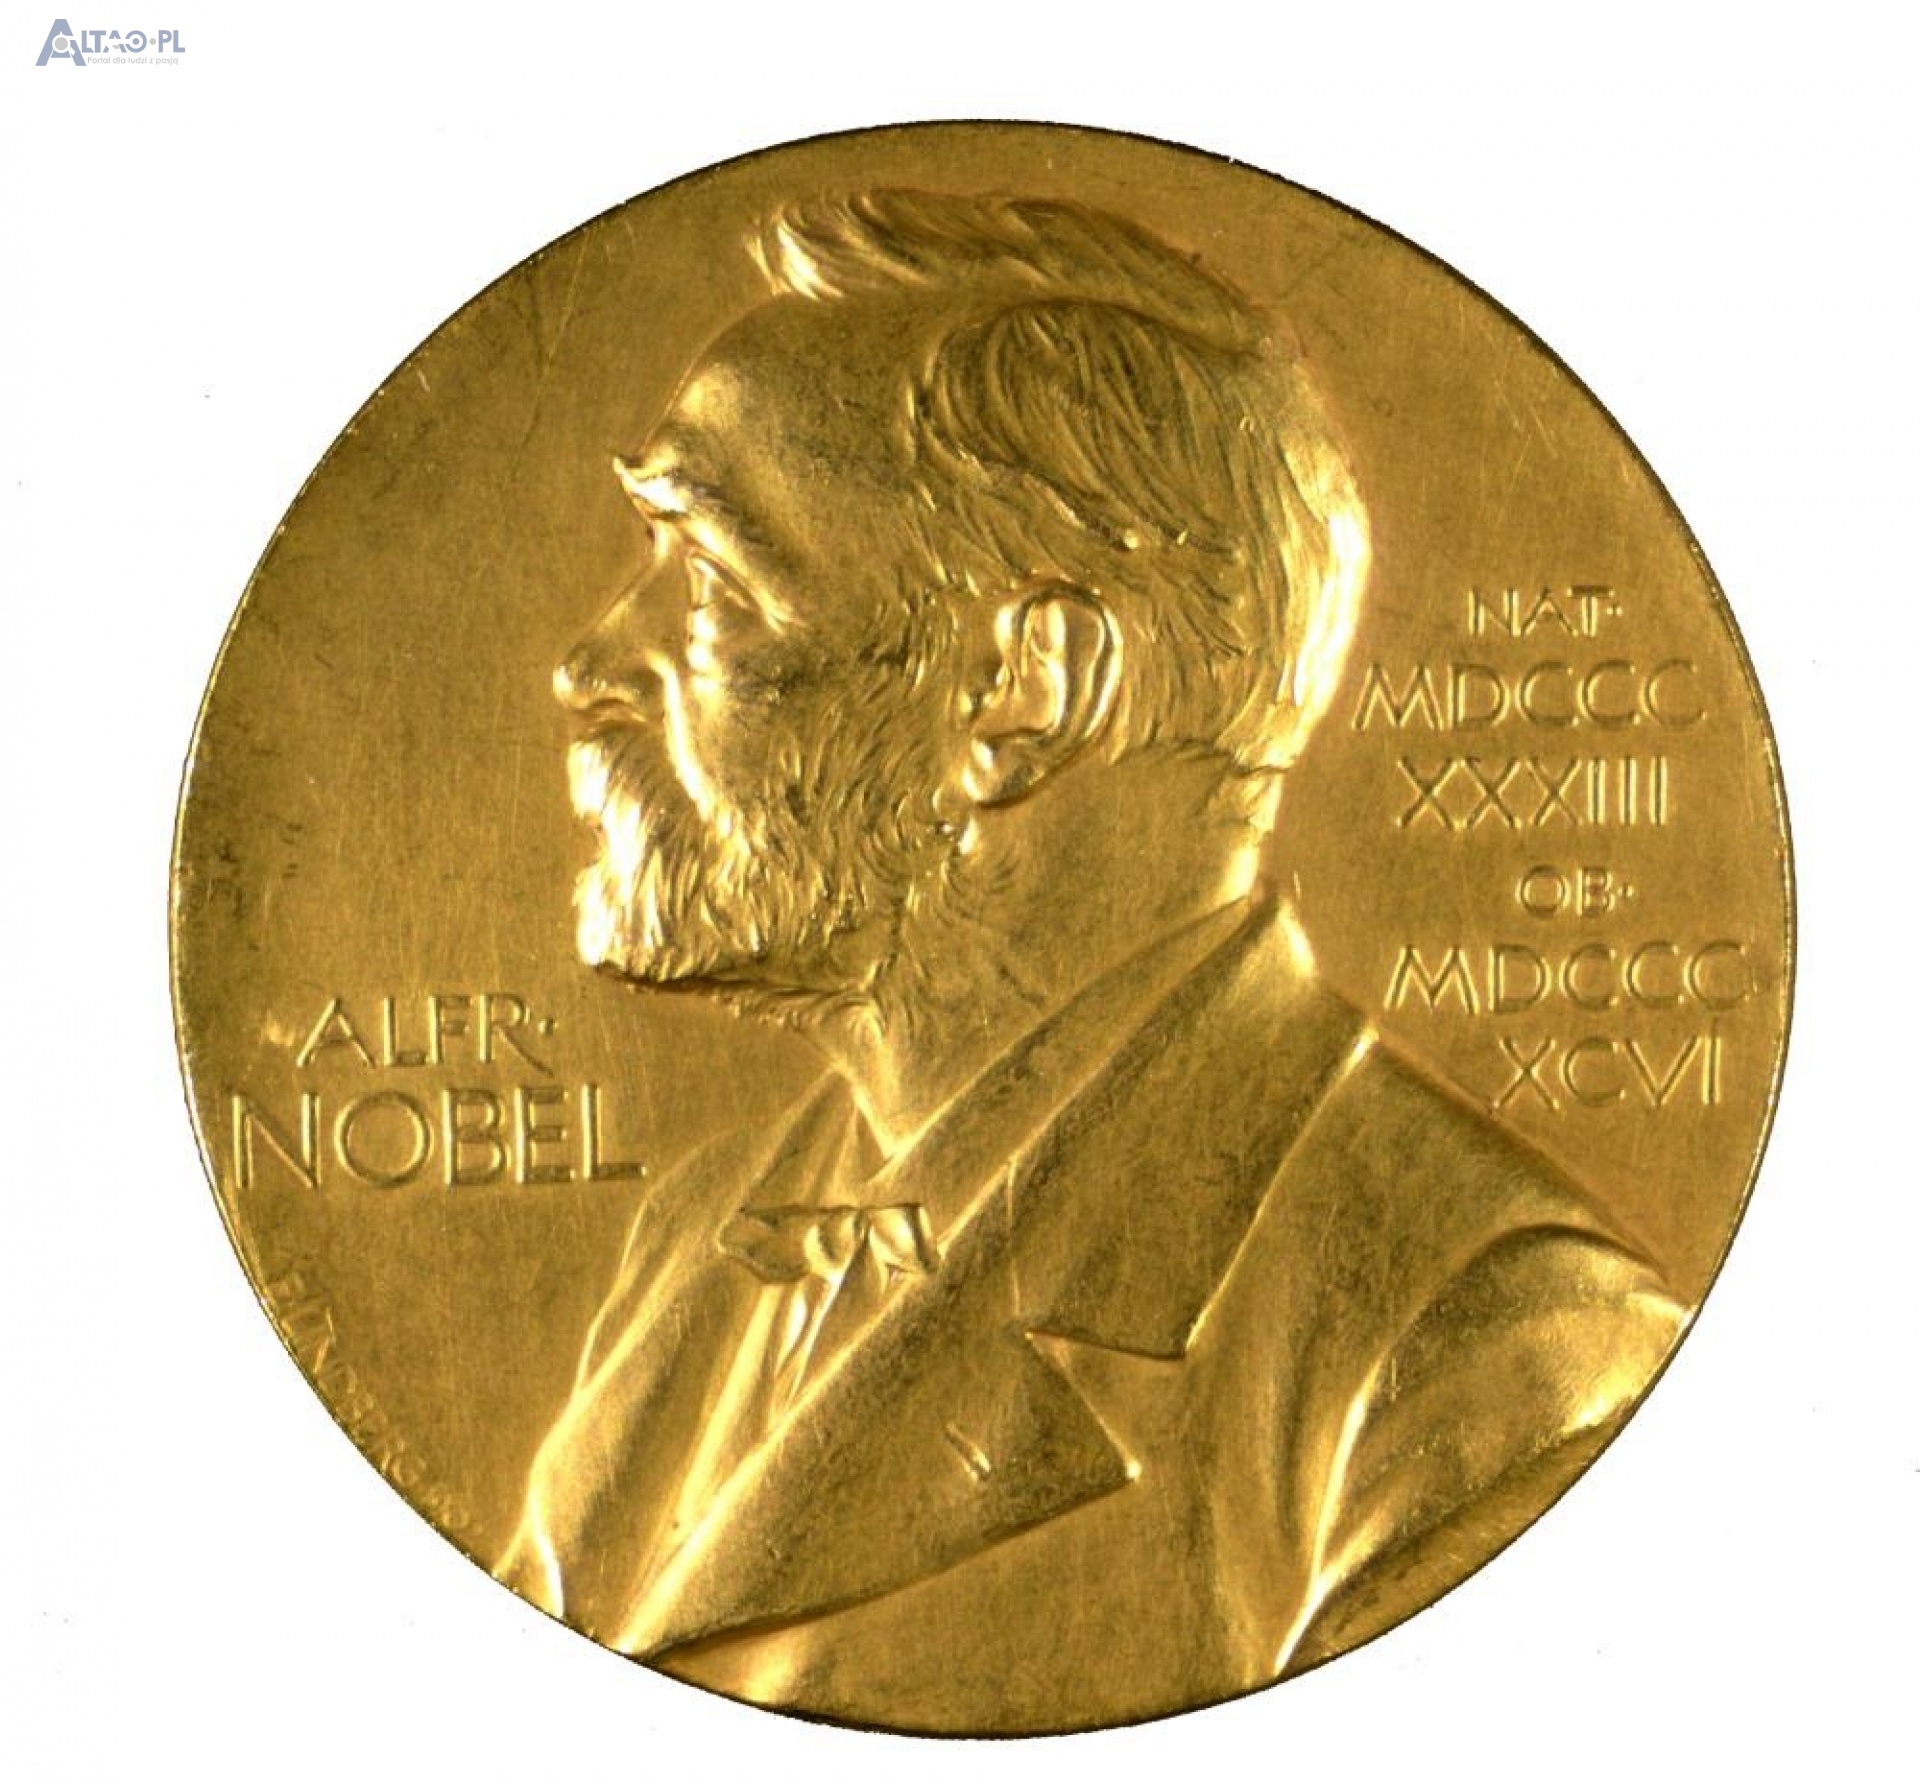 nagrody-nobla-2015-przyznane-podsumowanie-kultura-altao-pl